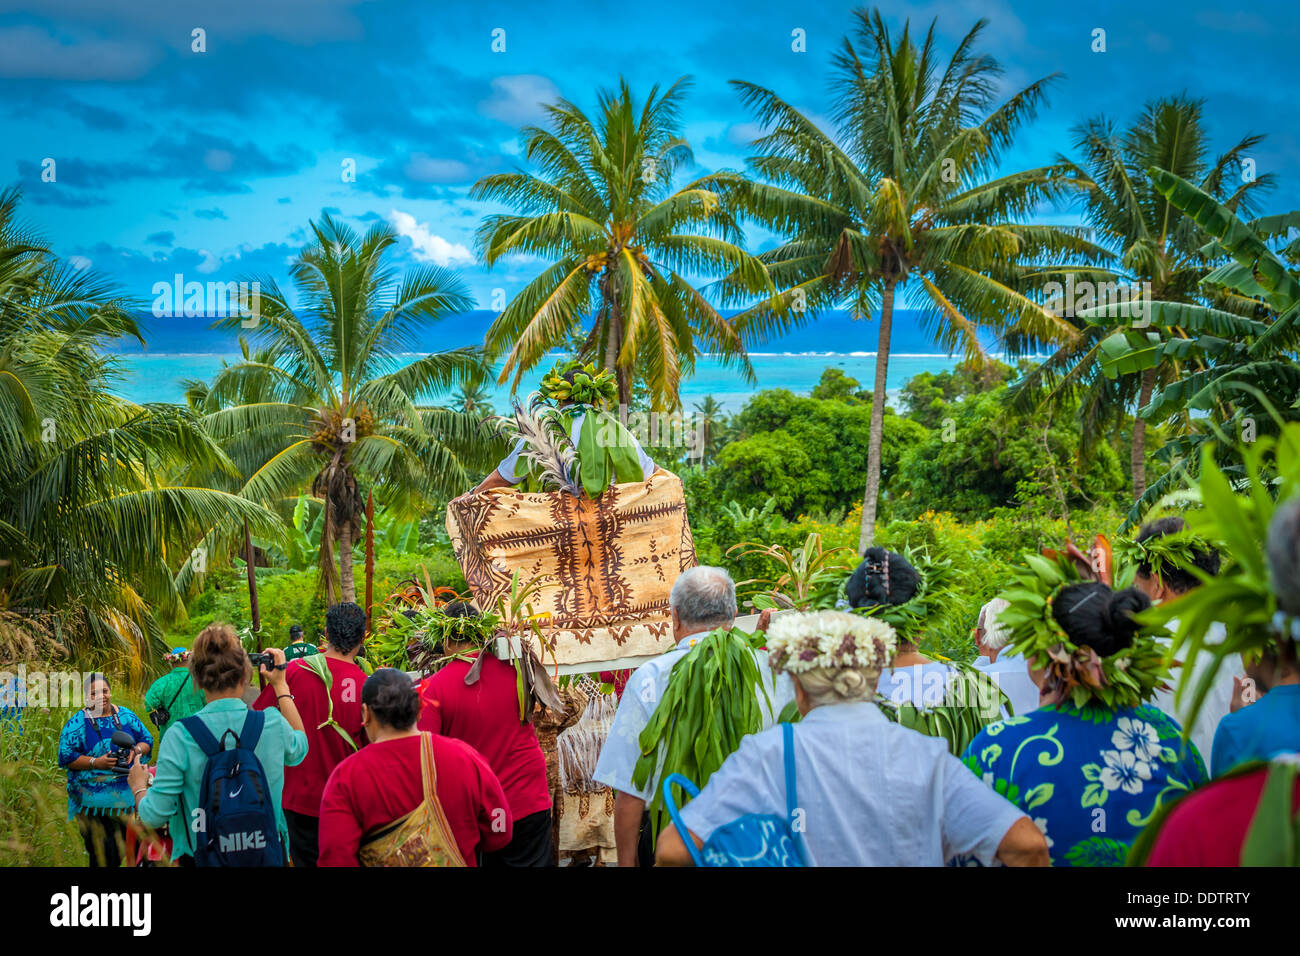 COOK INSELN - Makirau Haurua in traditioneller Tracht auf Thron durchgeführt wird, während der investitur - Aitutaki, Südpazifik Stockfoto